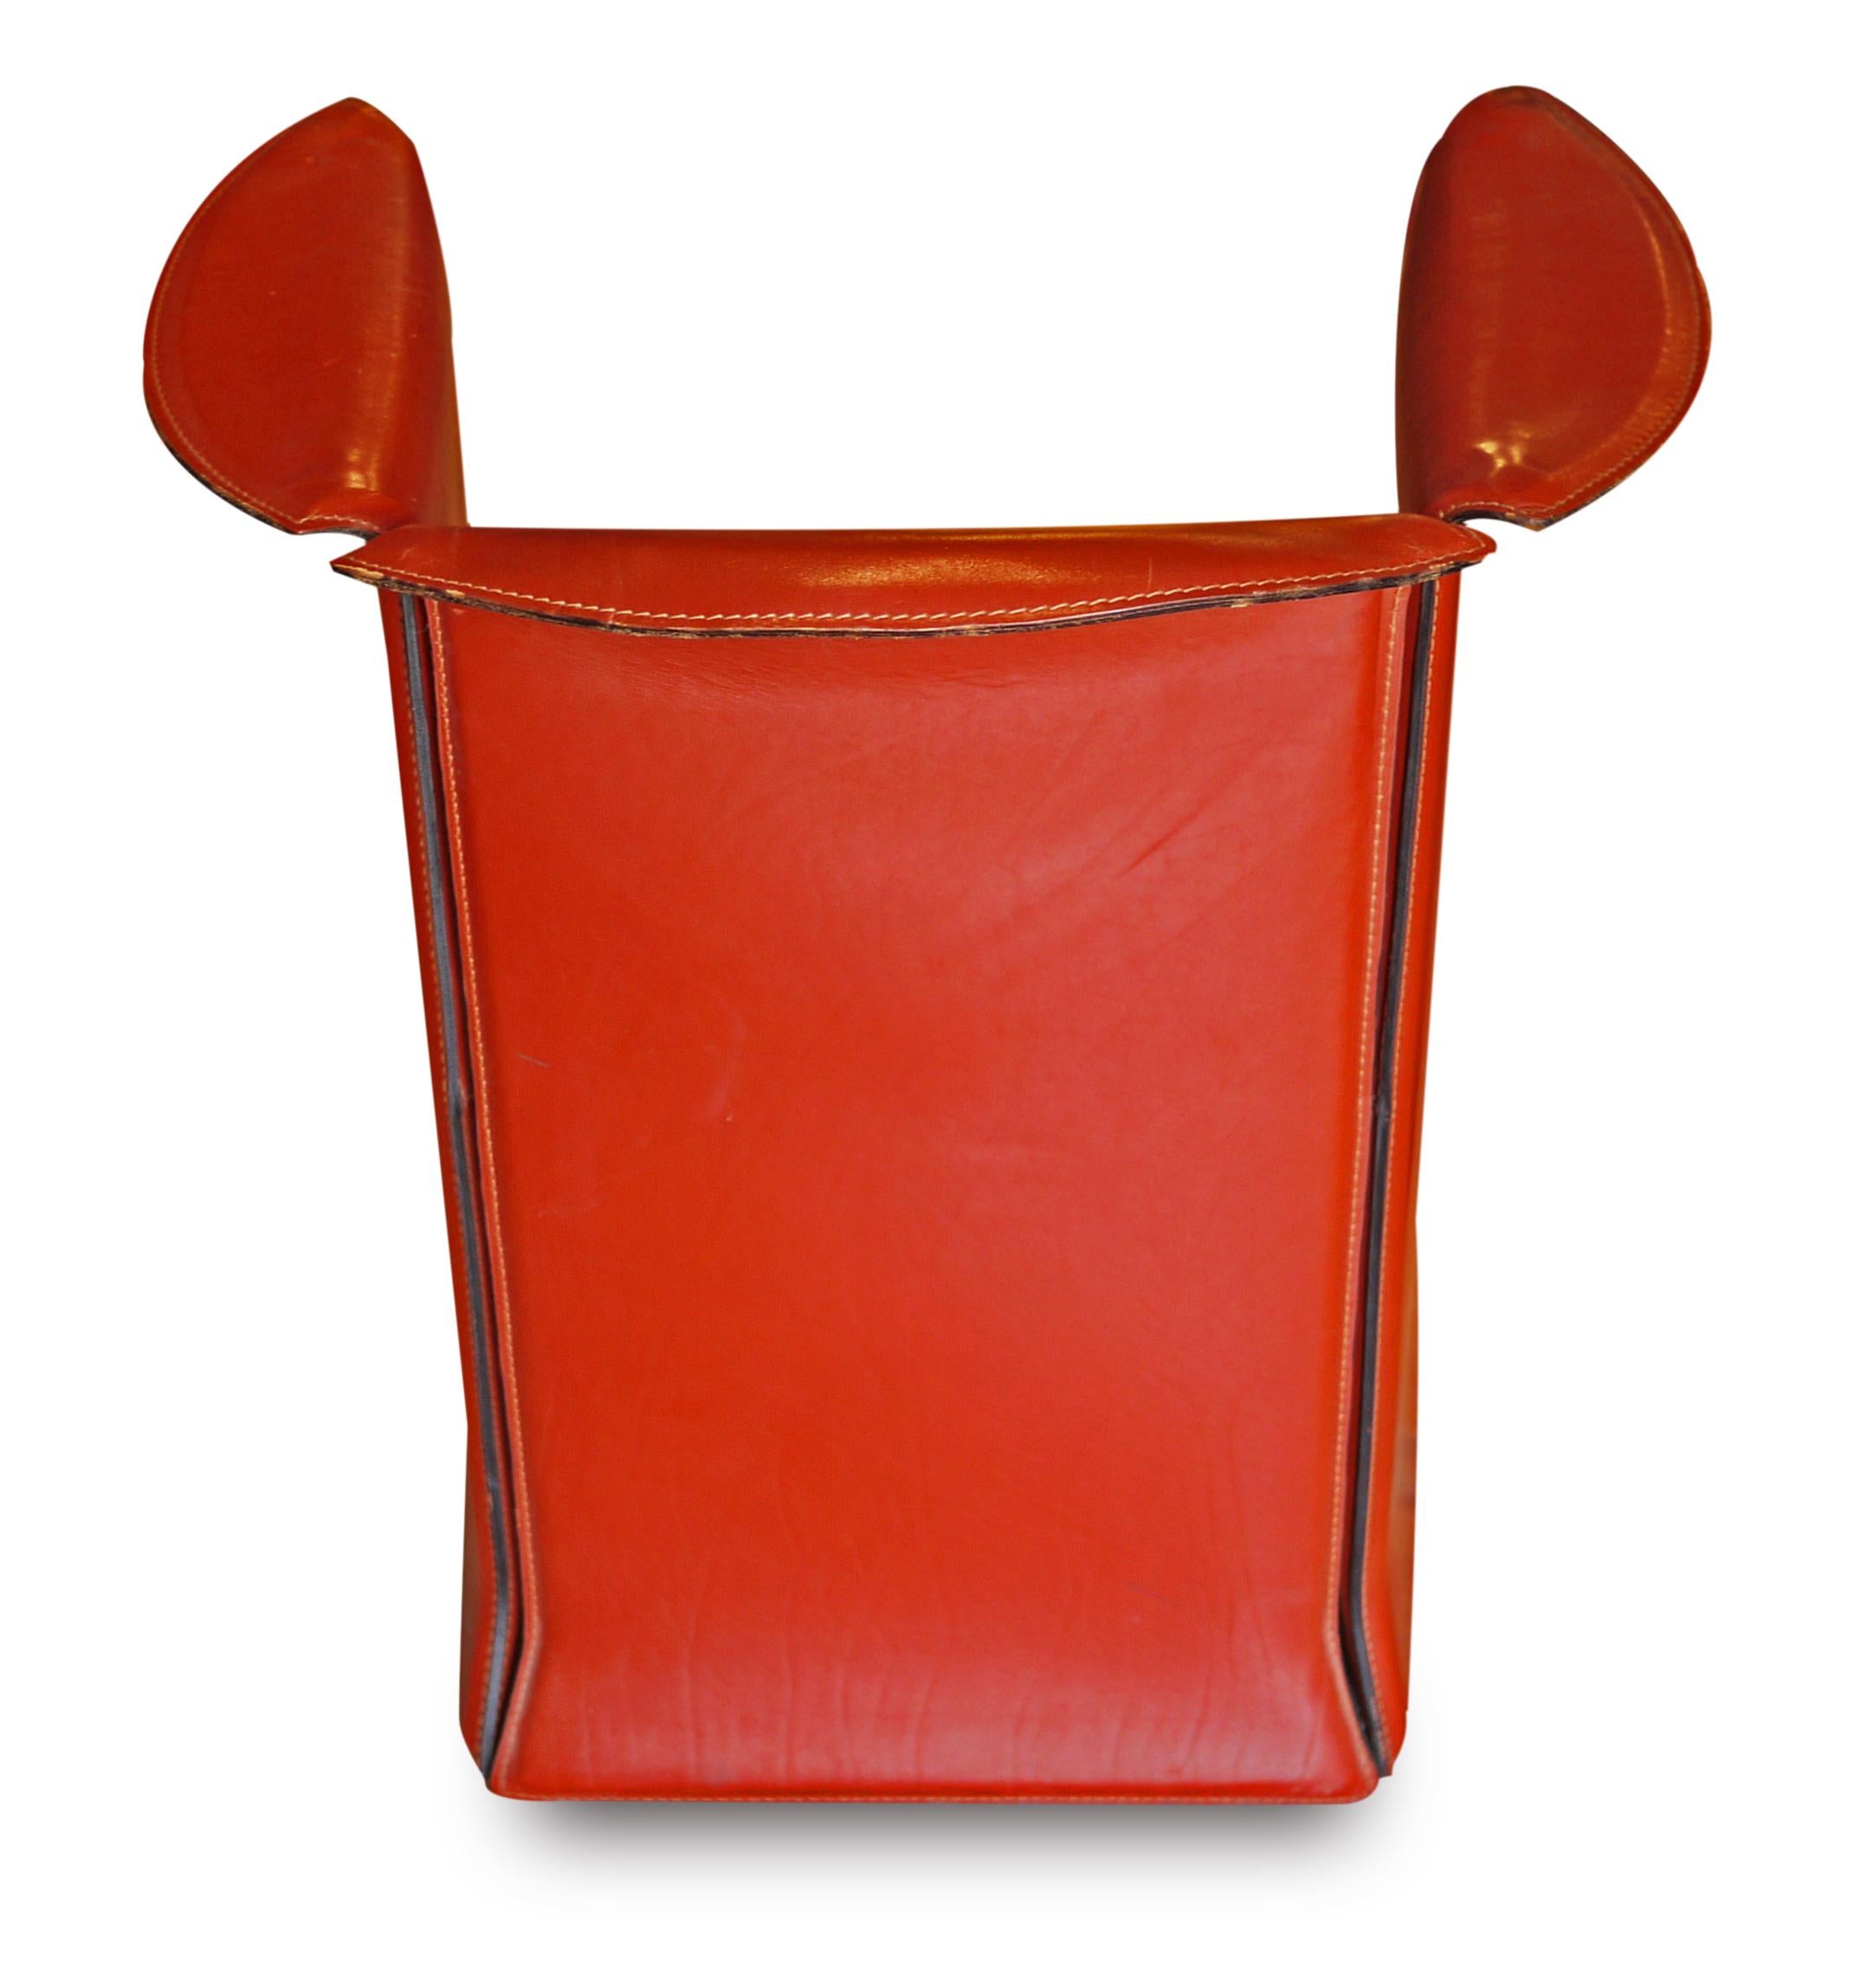 European Cassina Design Armchairs Orange Leather N-1, Mario Bellini for Cassina 80's